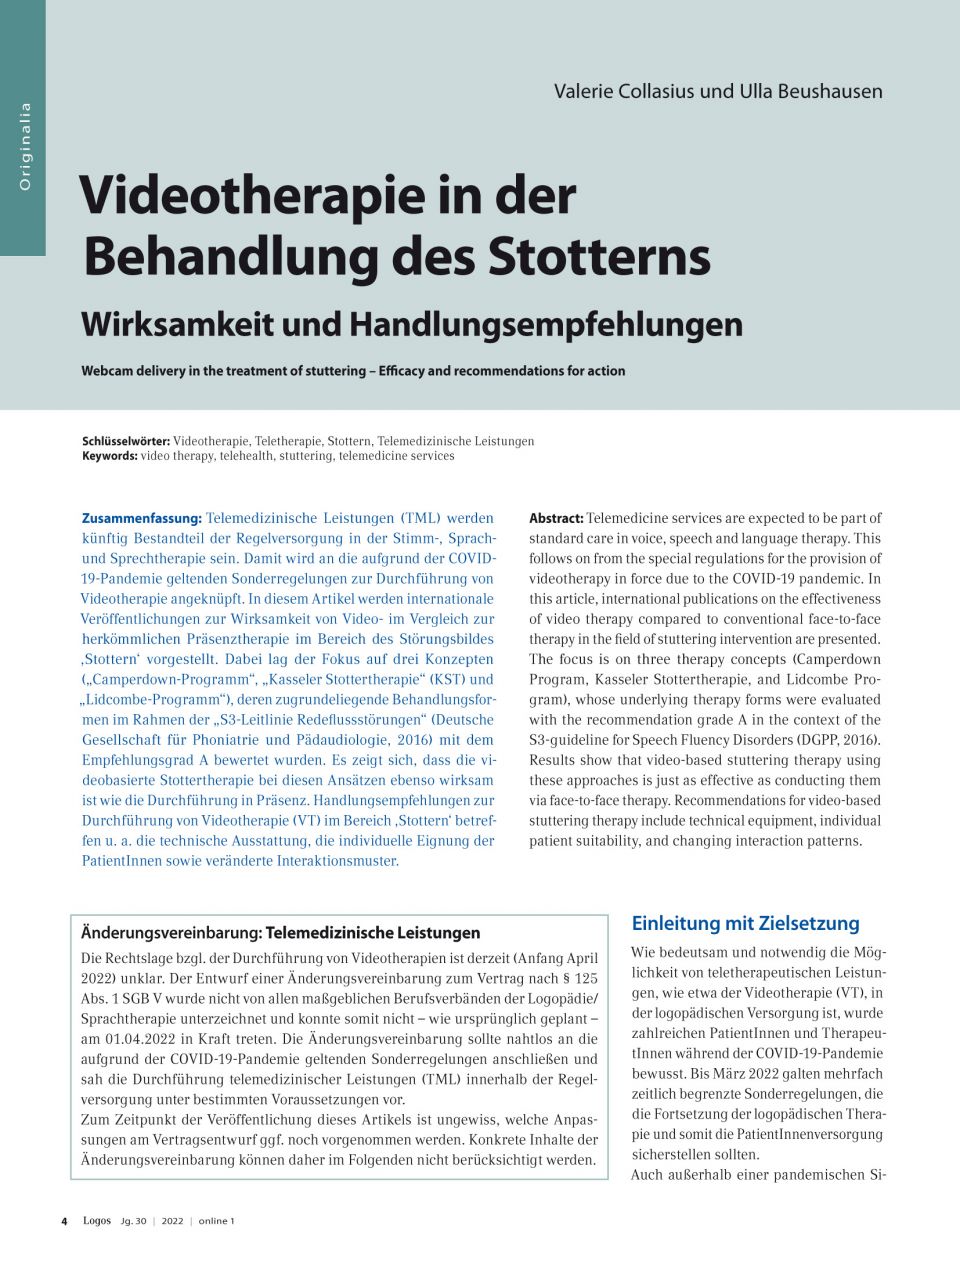 Videotherapie in der Behandlung des Stotterns – Wirksamkeit und Handlungsempfehlungen